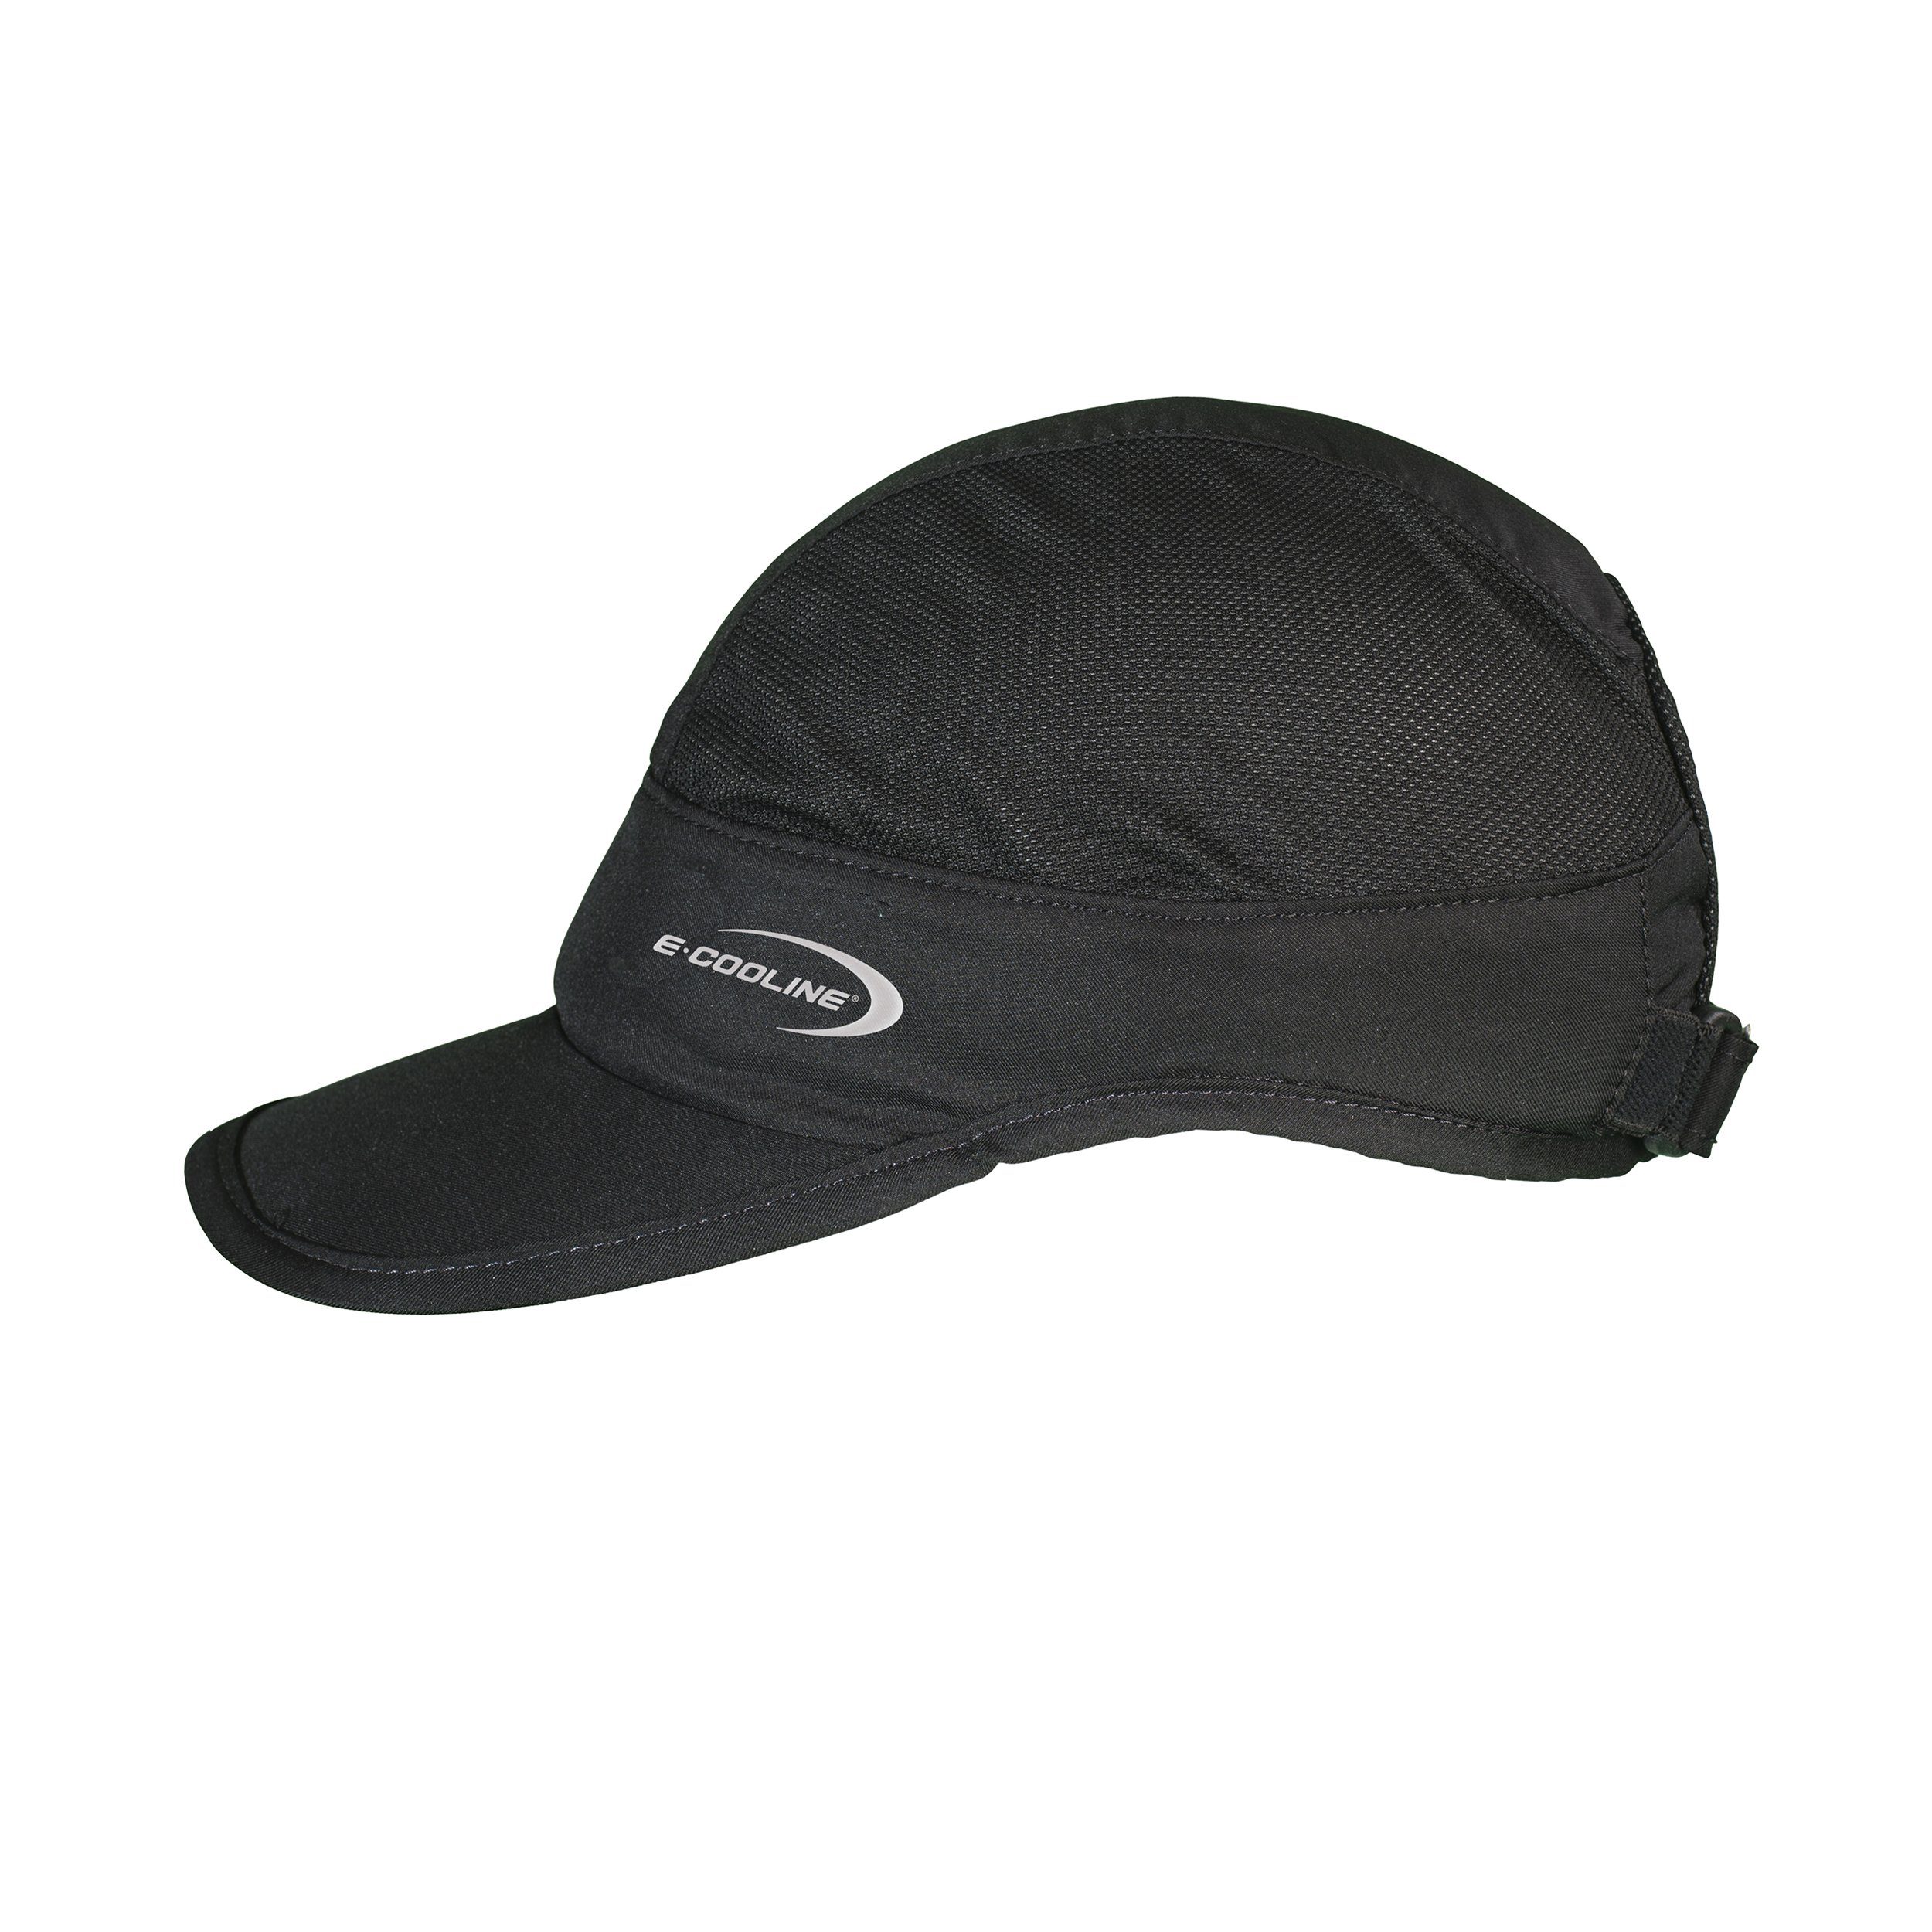 E.COOLINE Baseball Cap - kühlendes Basecap light - Kühlung durch Aktivierung mit Wasser Klimaanlage zum Anziehen